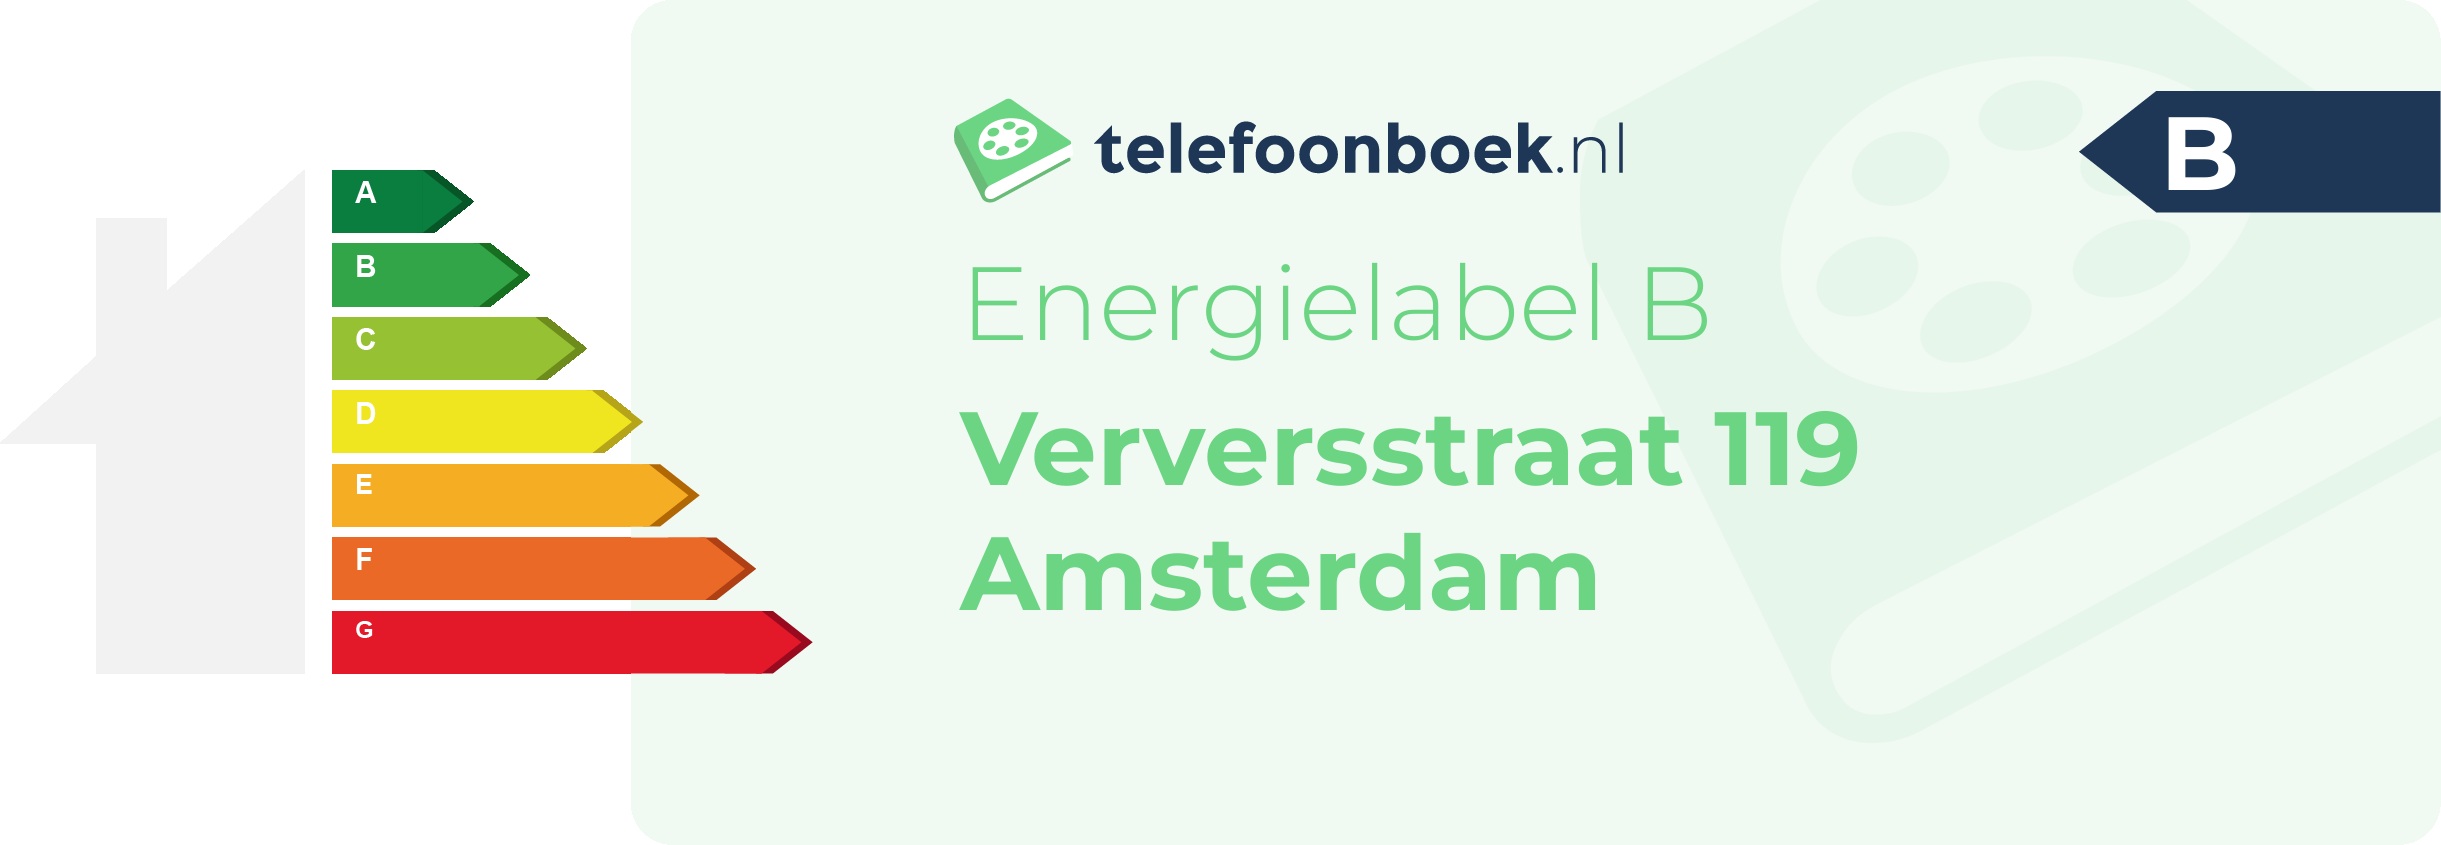 Energielabel Verversstraat 119 Amsterdam